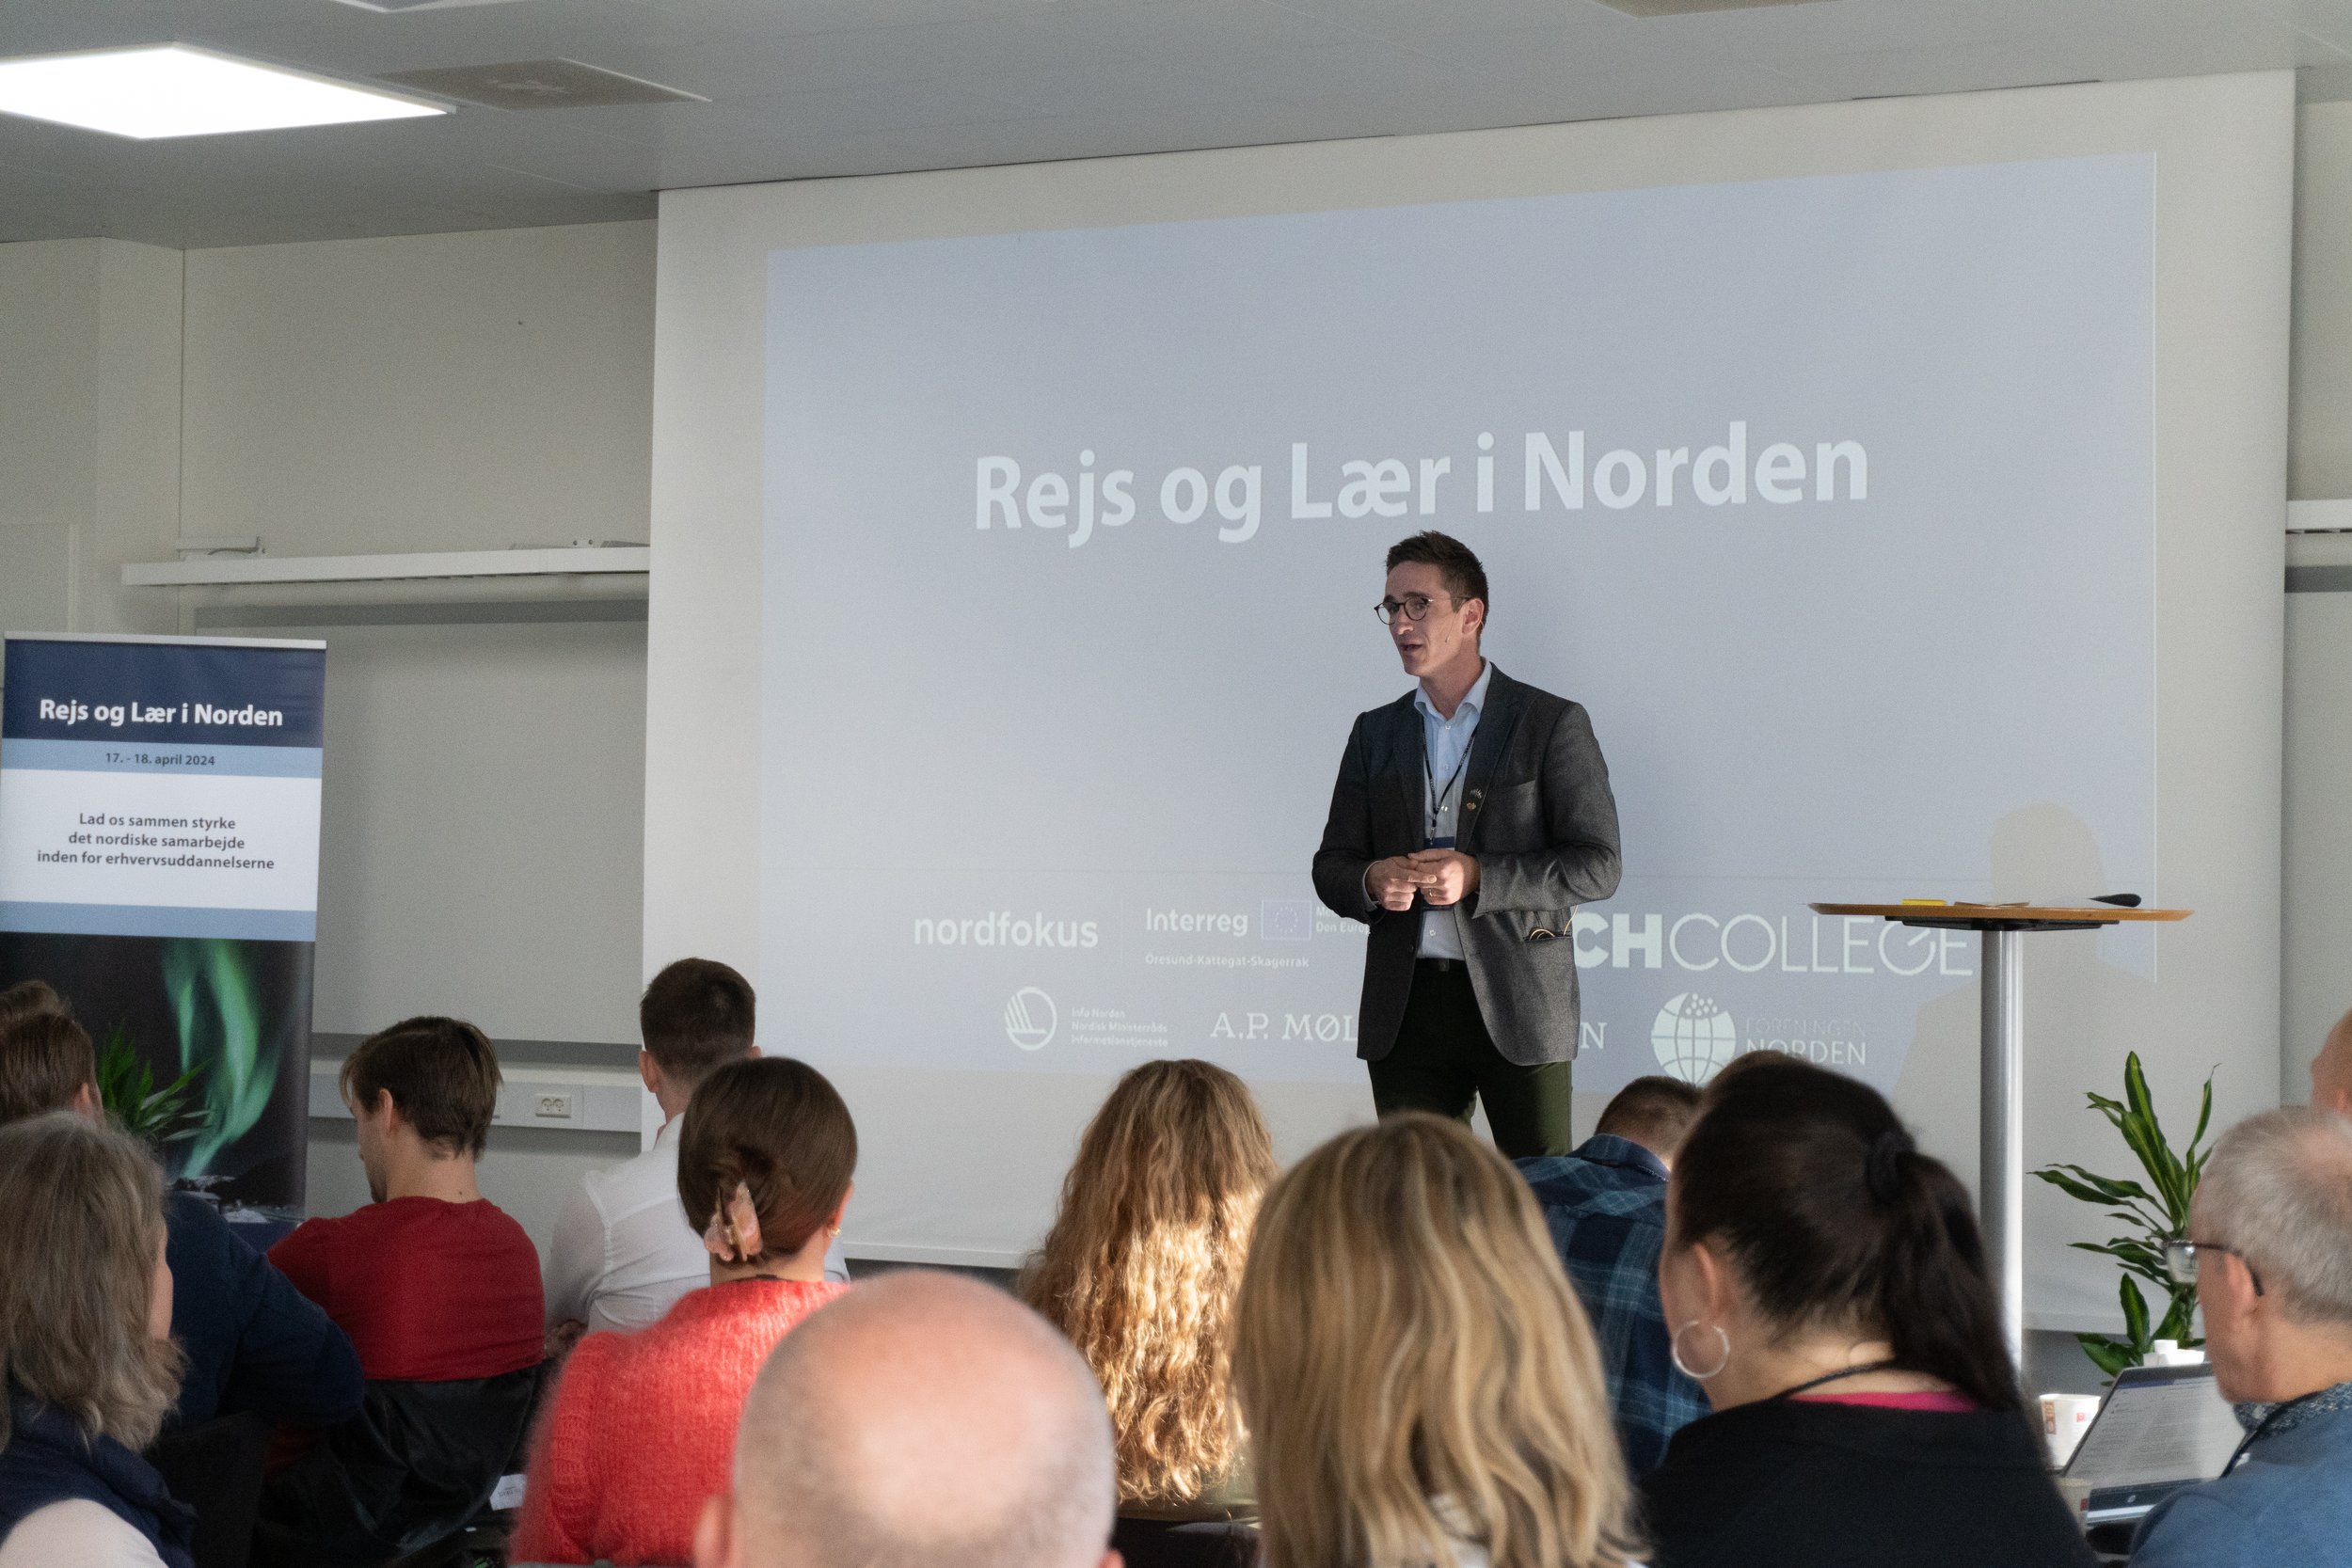 Konference i Aalborg - Rejs og lær